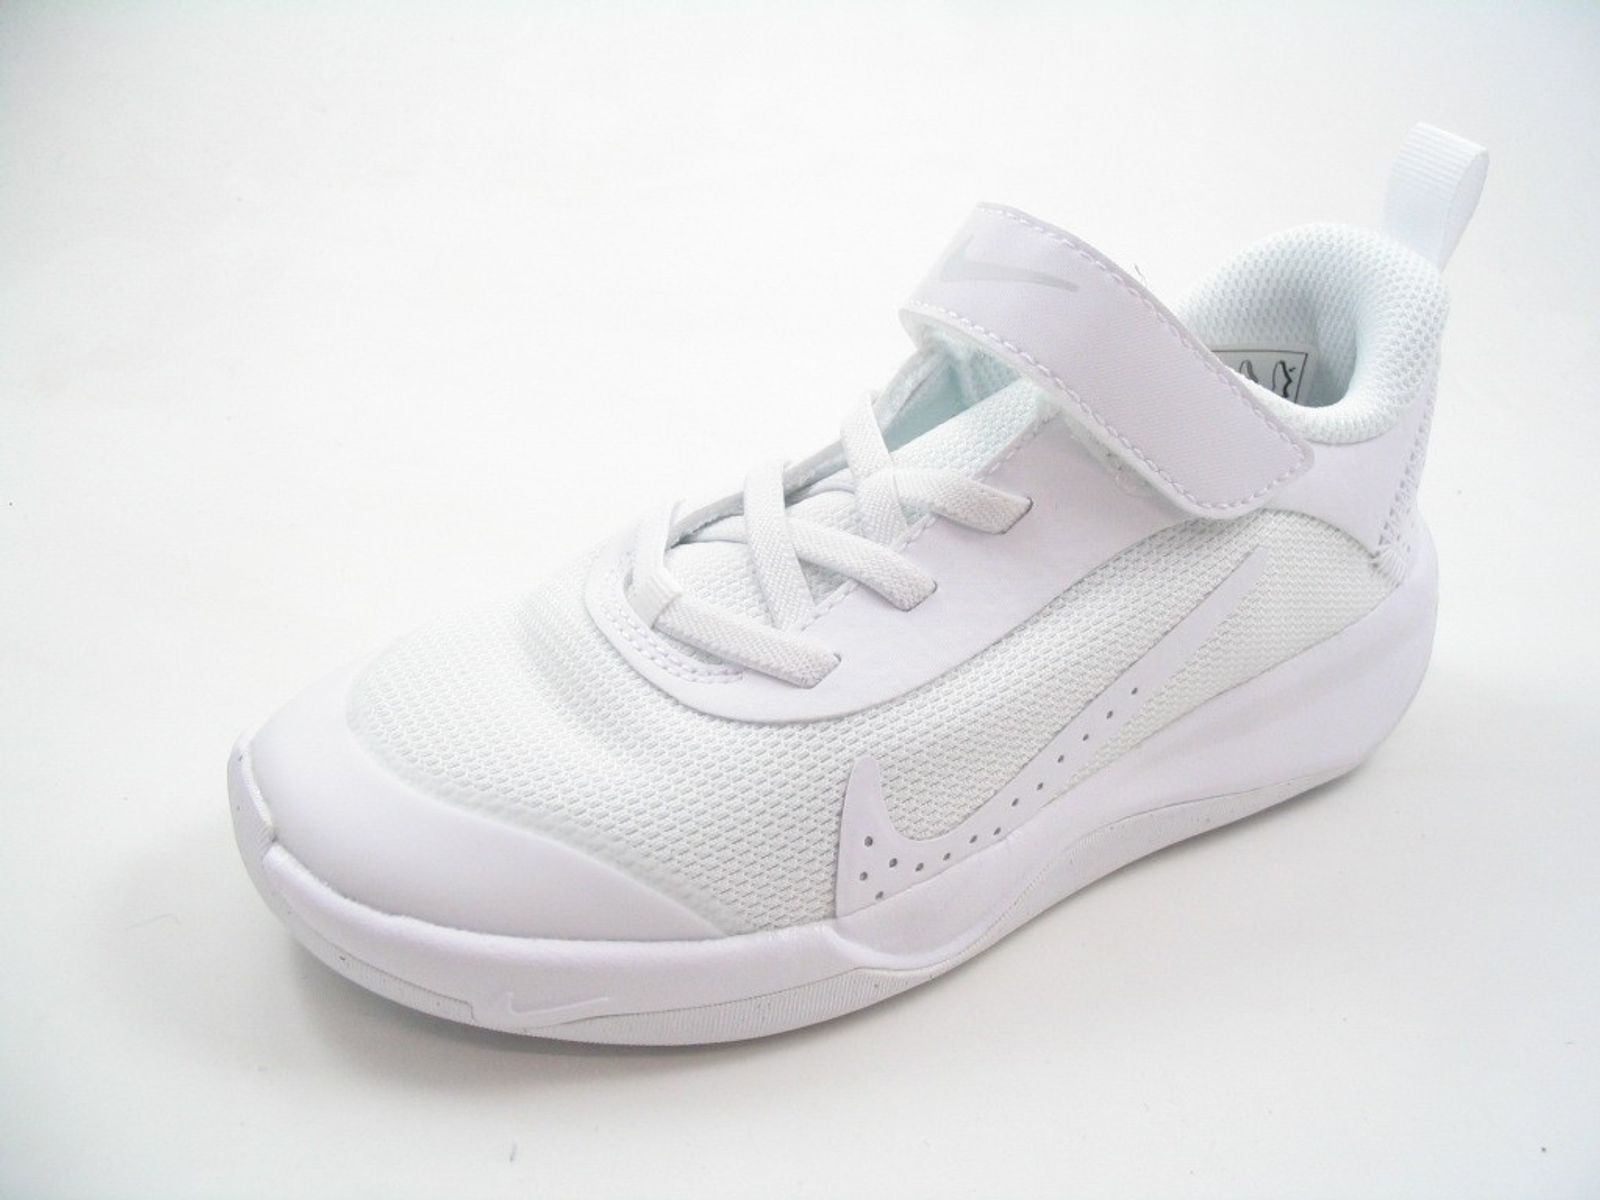 Schuh von Nike, 32